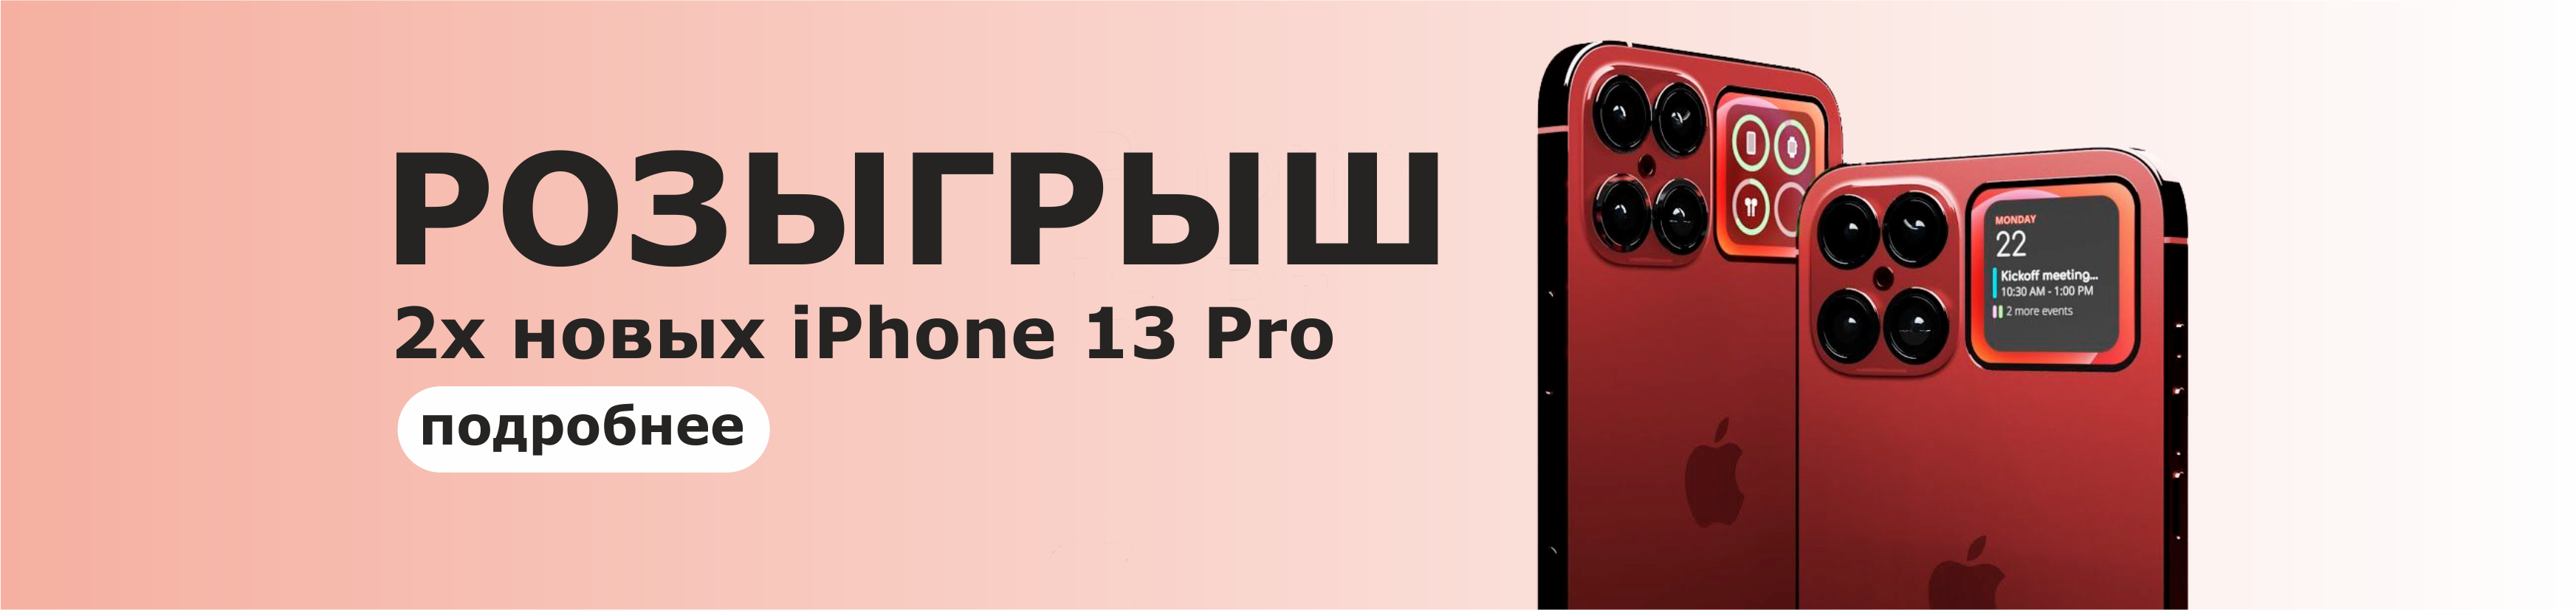 Розыгрыш 2-х iPhone 13 Pro (10.09.21 по 18.10.21)